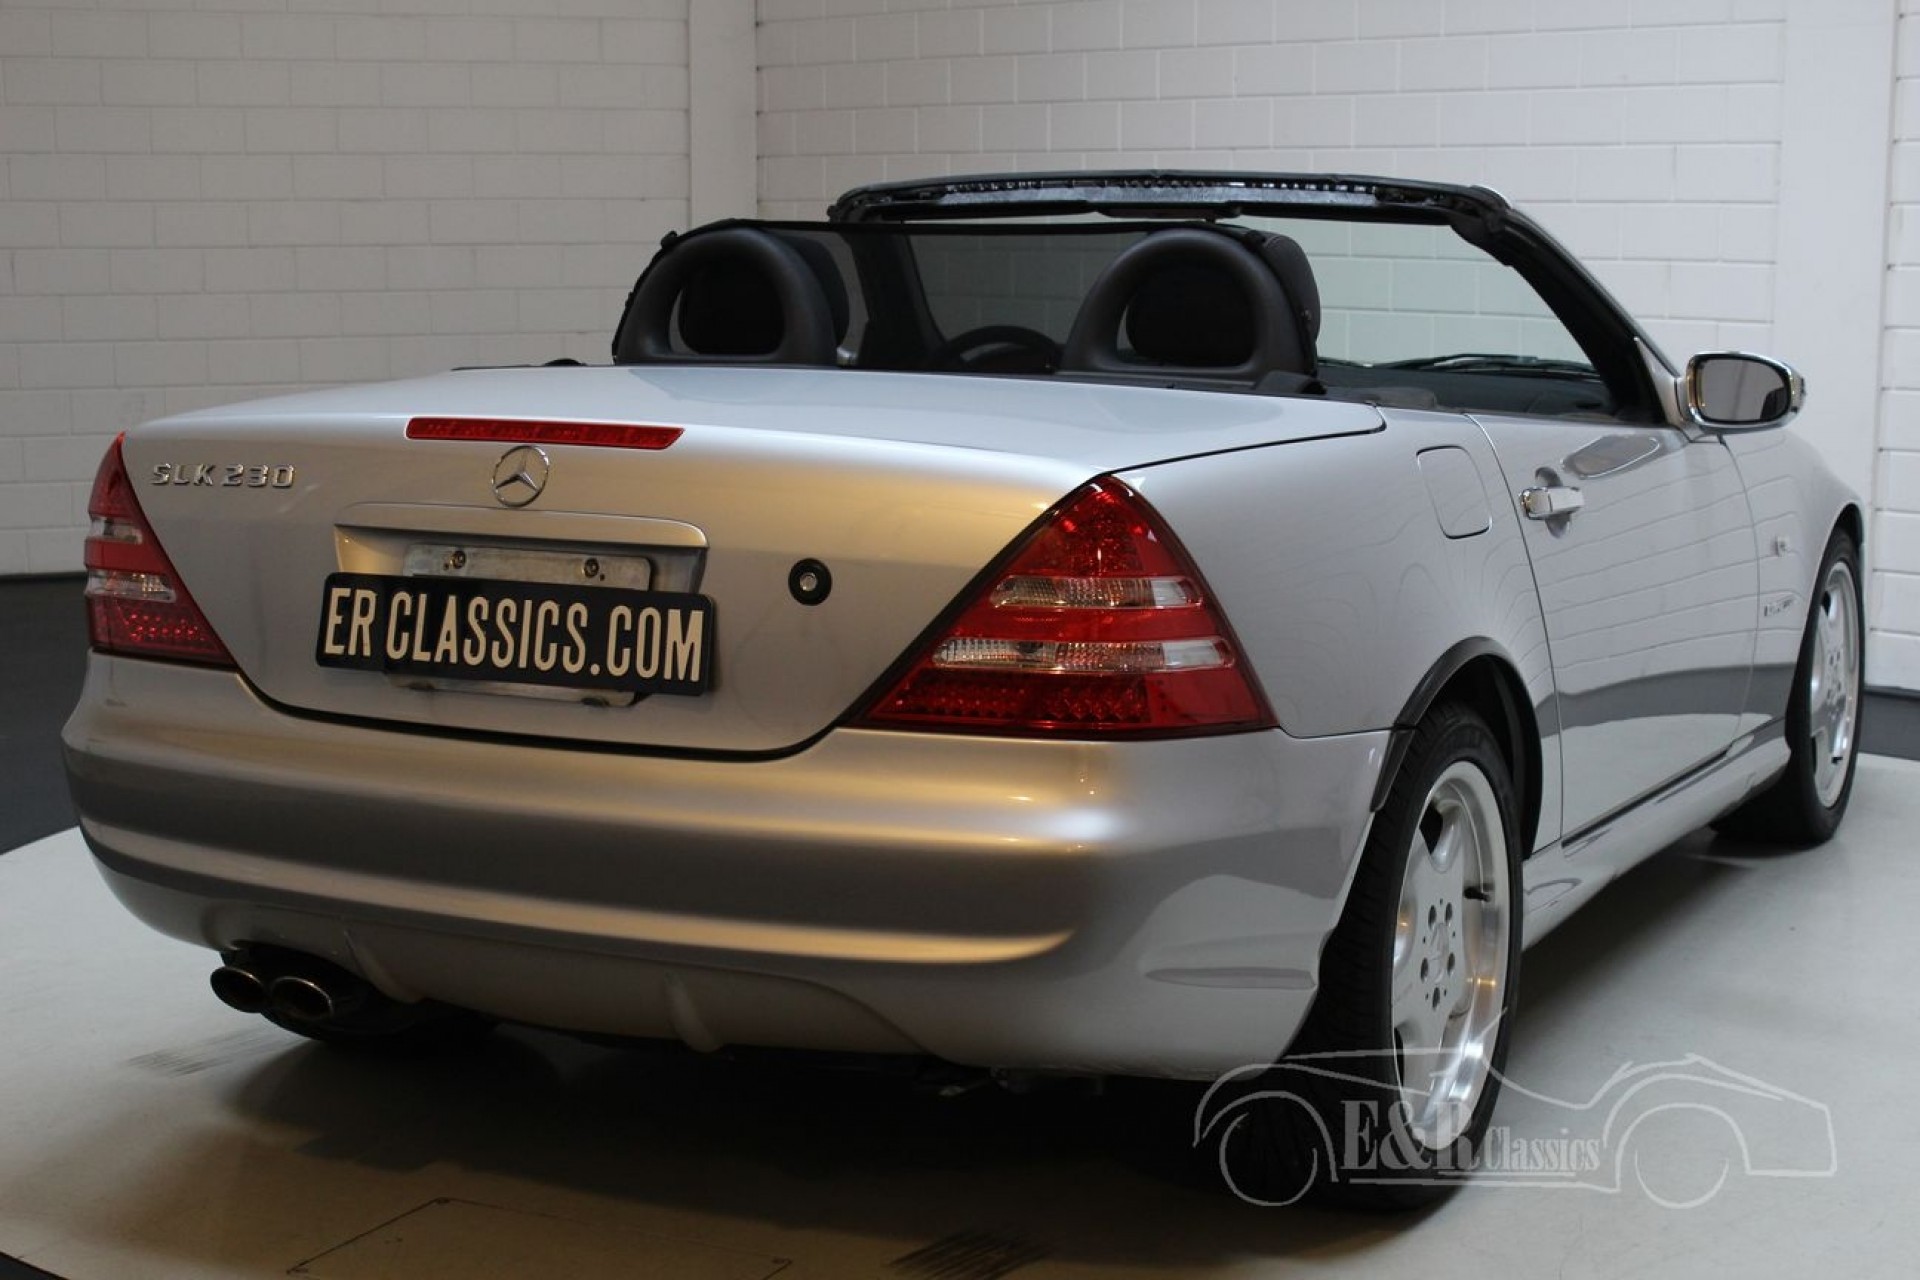 Mercedes Benz Slk 230 1997 For Sale At Erclassics